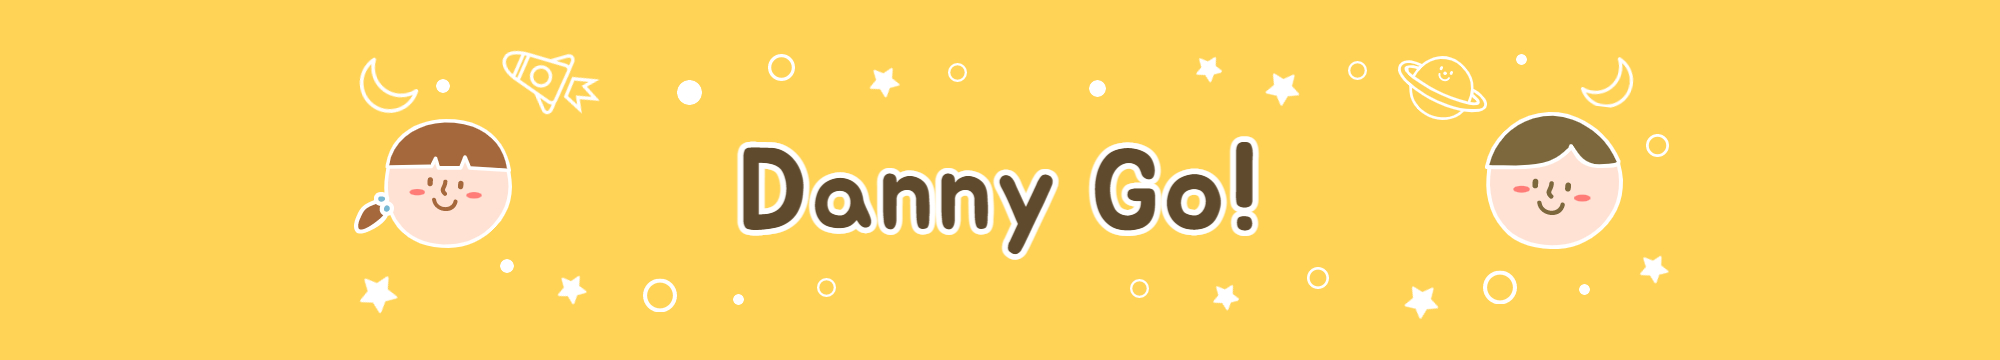 영유 노래 추천 - Danny Go!